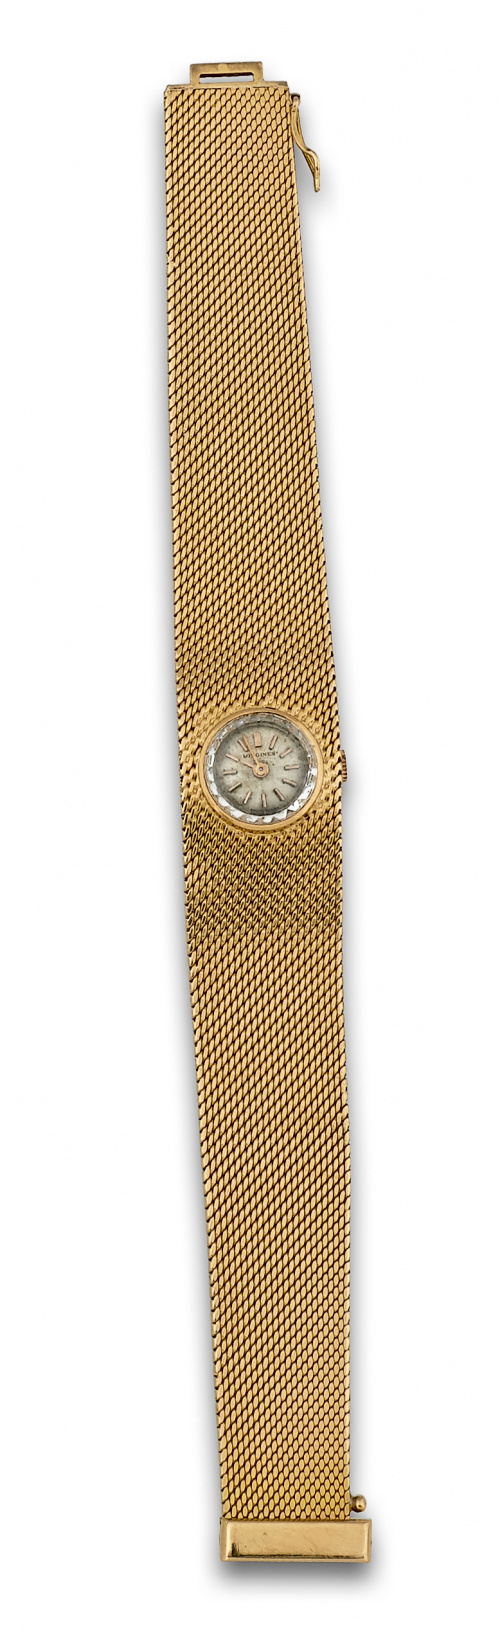 Reloj de pulsera LONGINES años 60 en malla ancha de oro de 